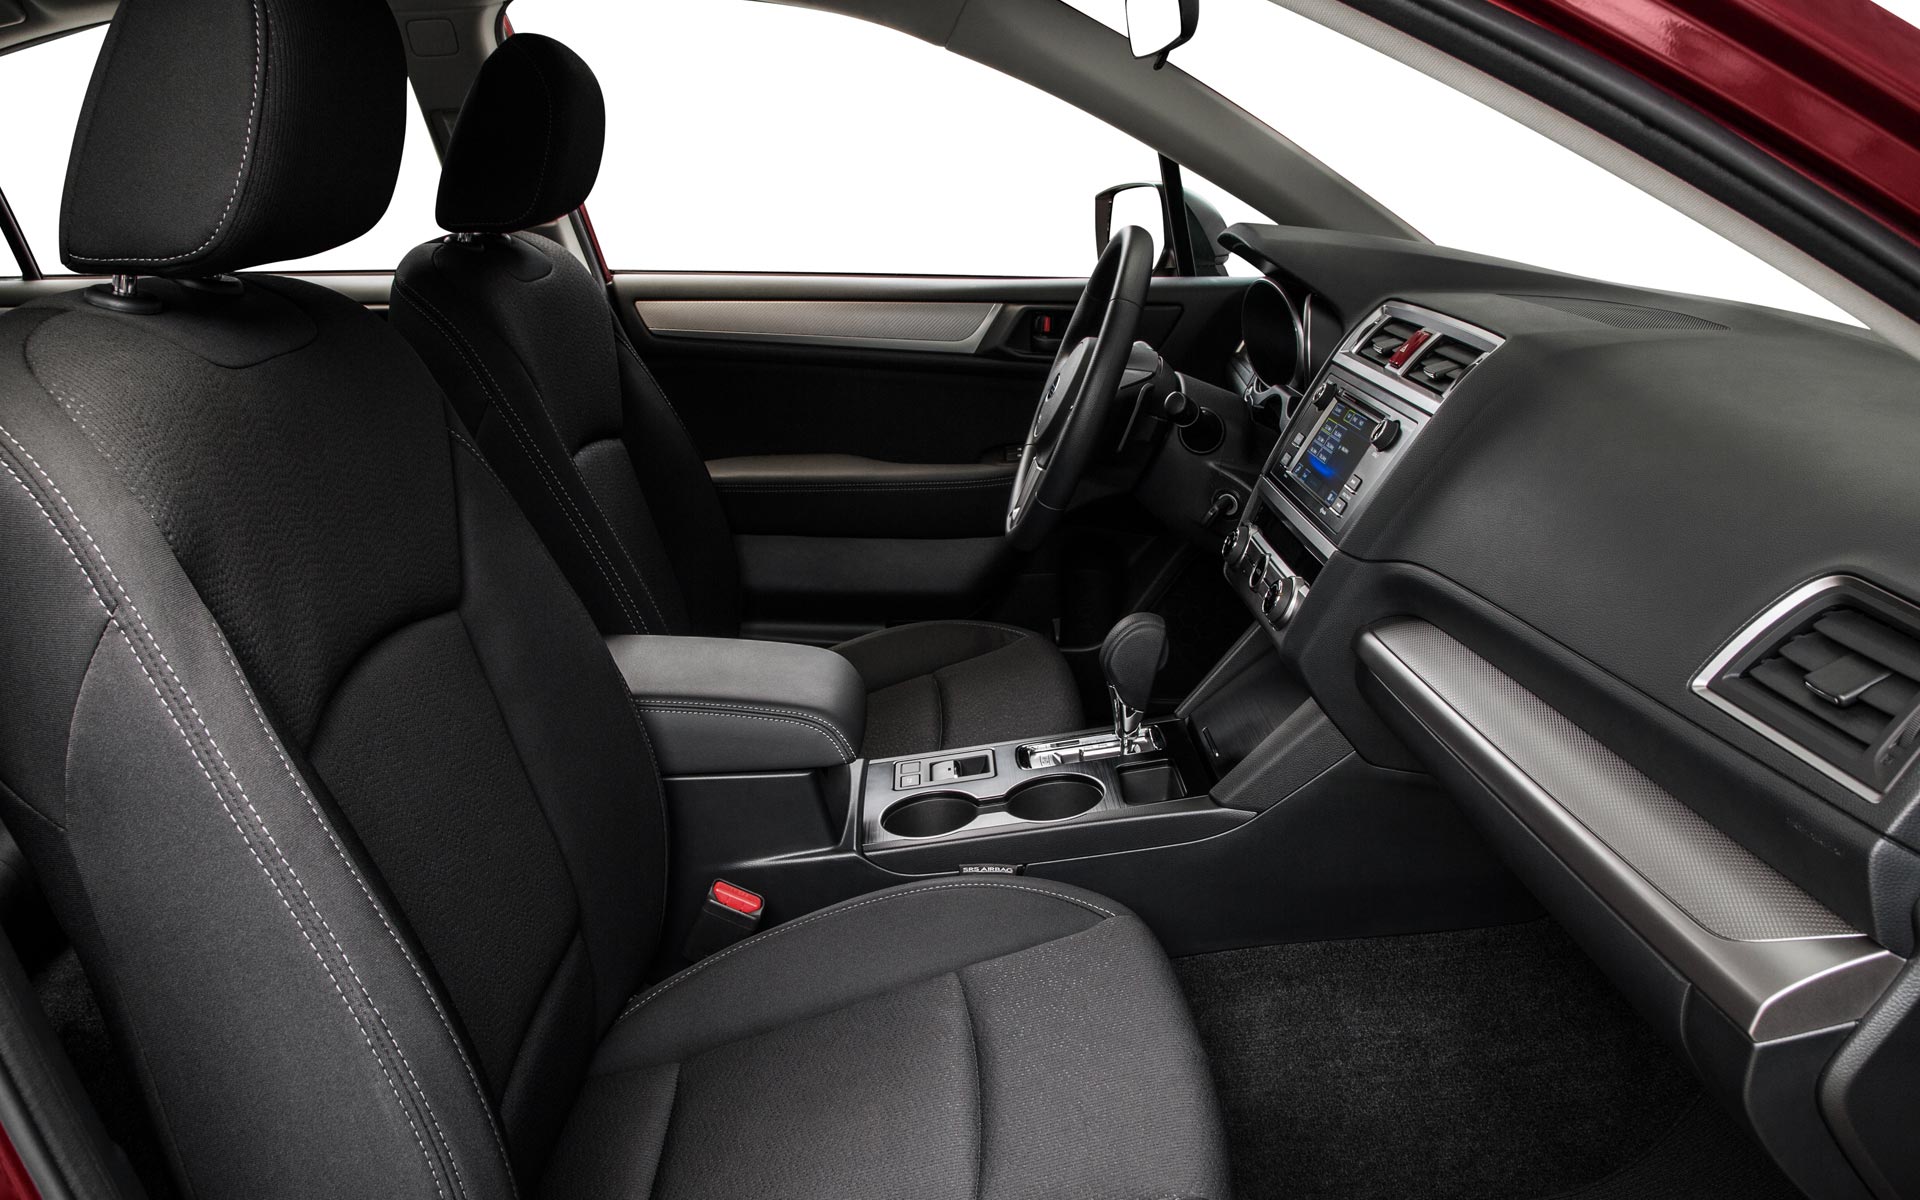 Subaru Legacy 2 5i Premium Interior Image Gallery, Pictures, Photos